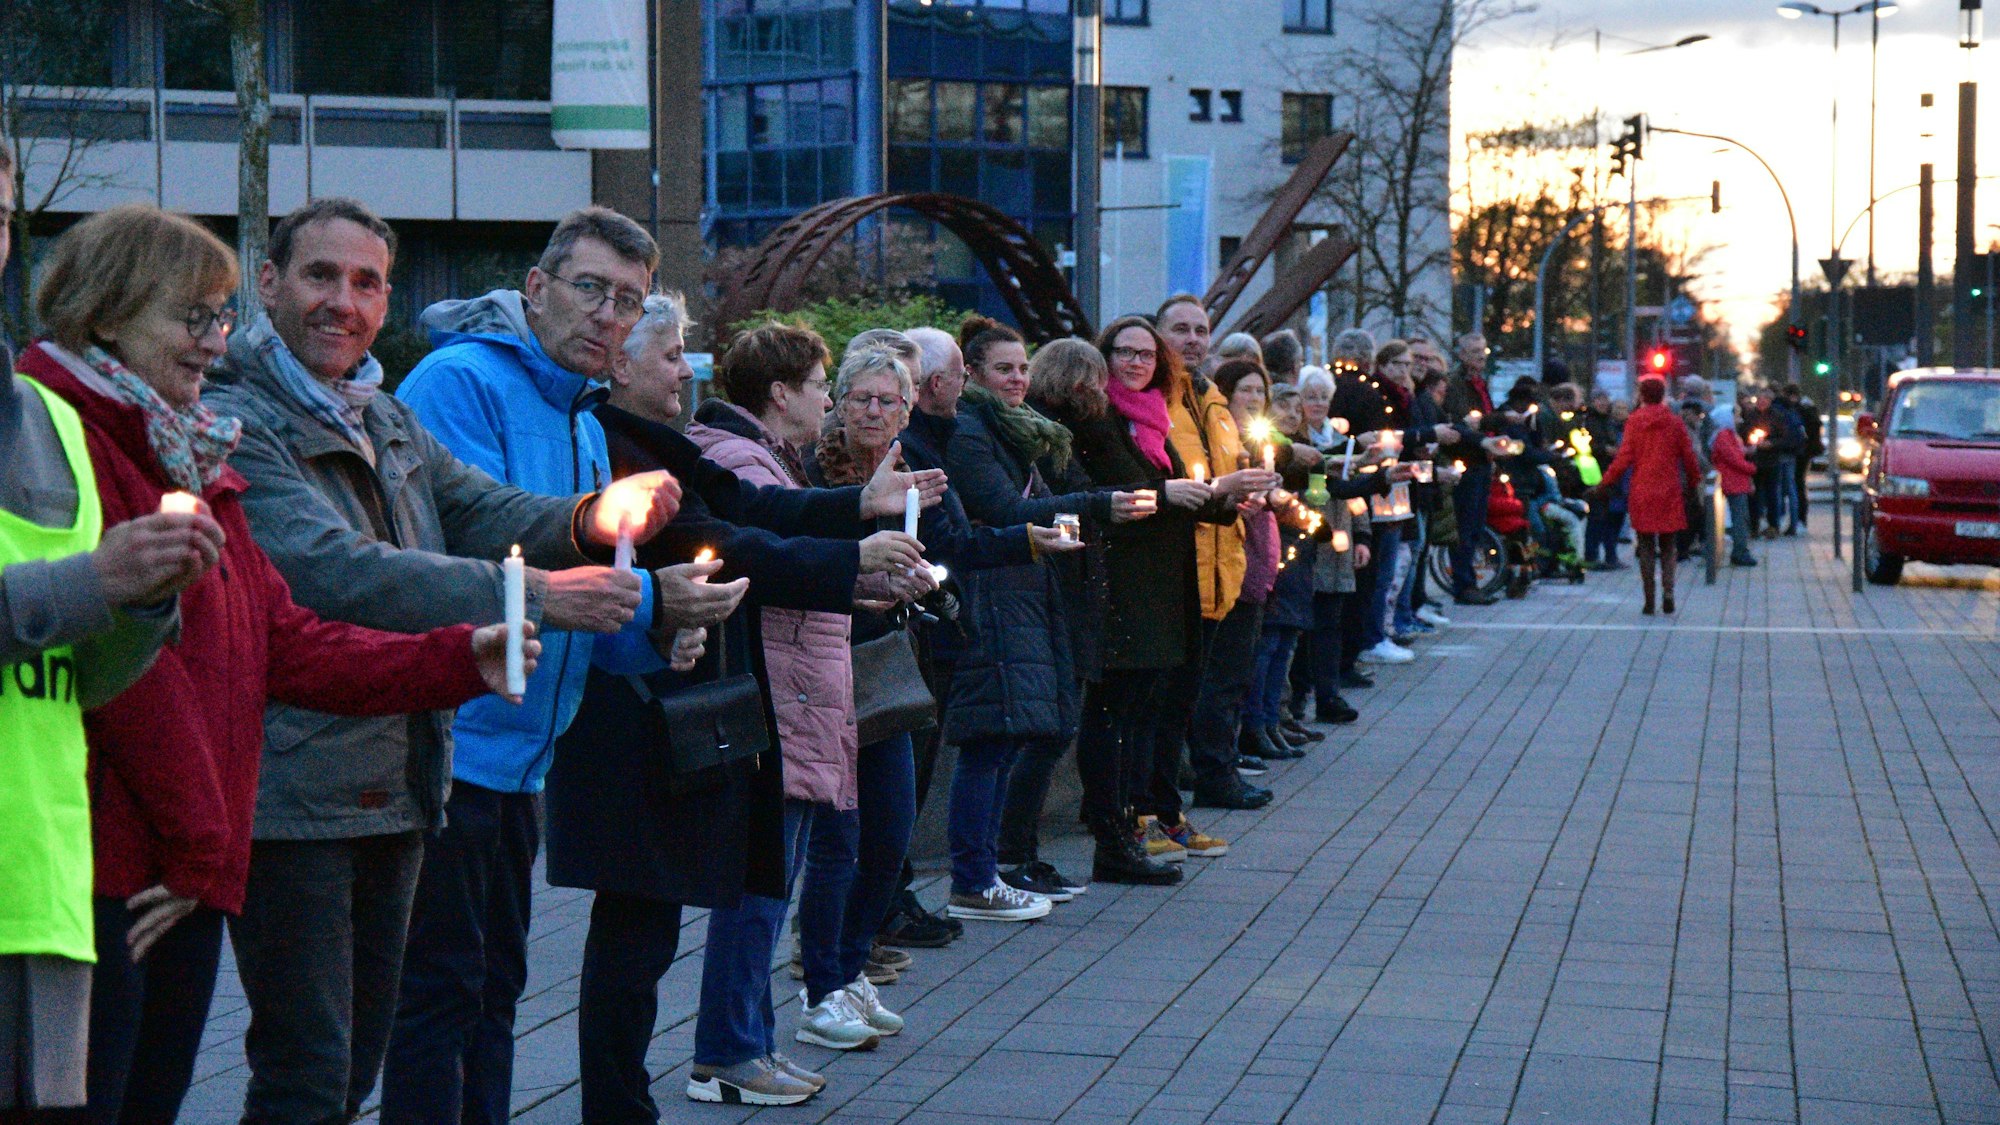 Eine lange Reihe von Menschen steht nebeneinander auf einem Gehweg; sie tragen Kerzen in ihren Händen.